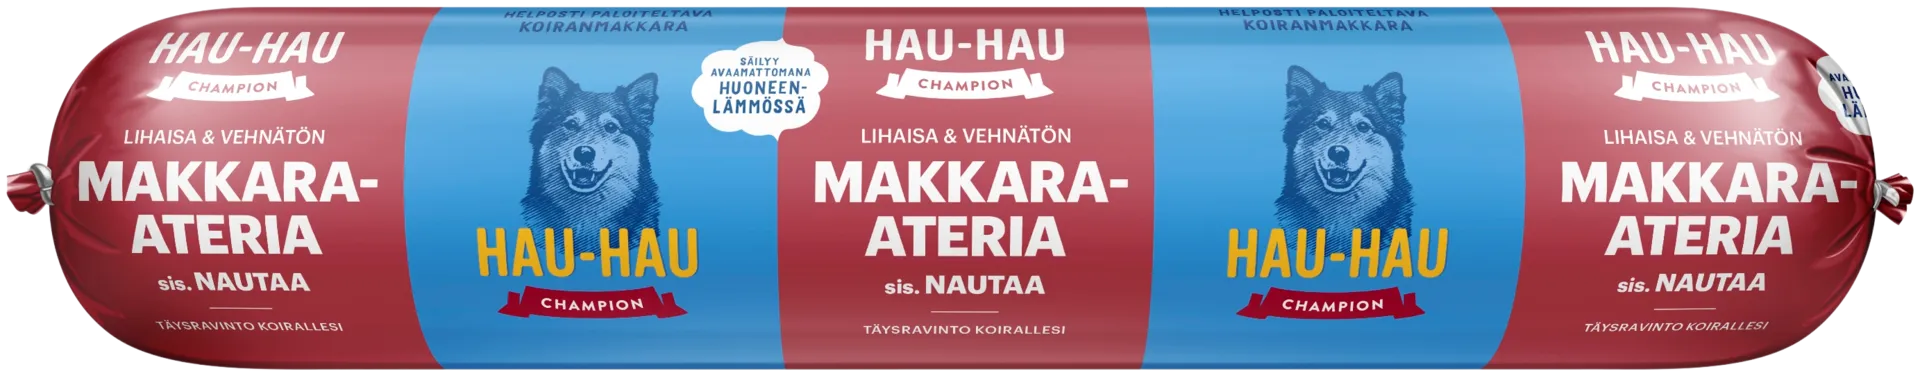 Hau-Hau Champion Makkara-ateria nautaa 500 g